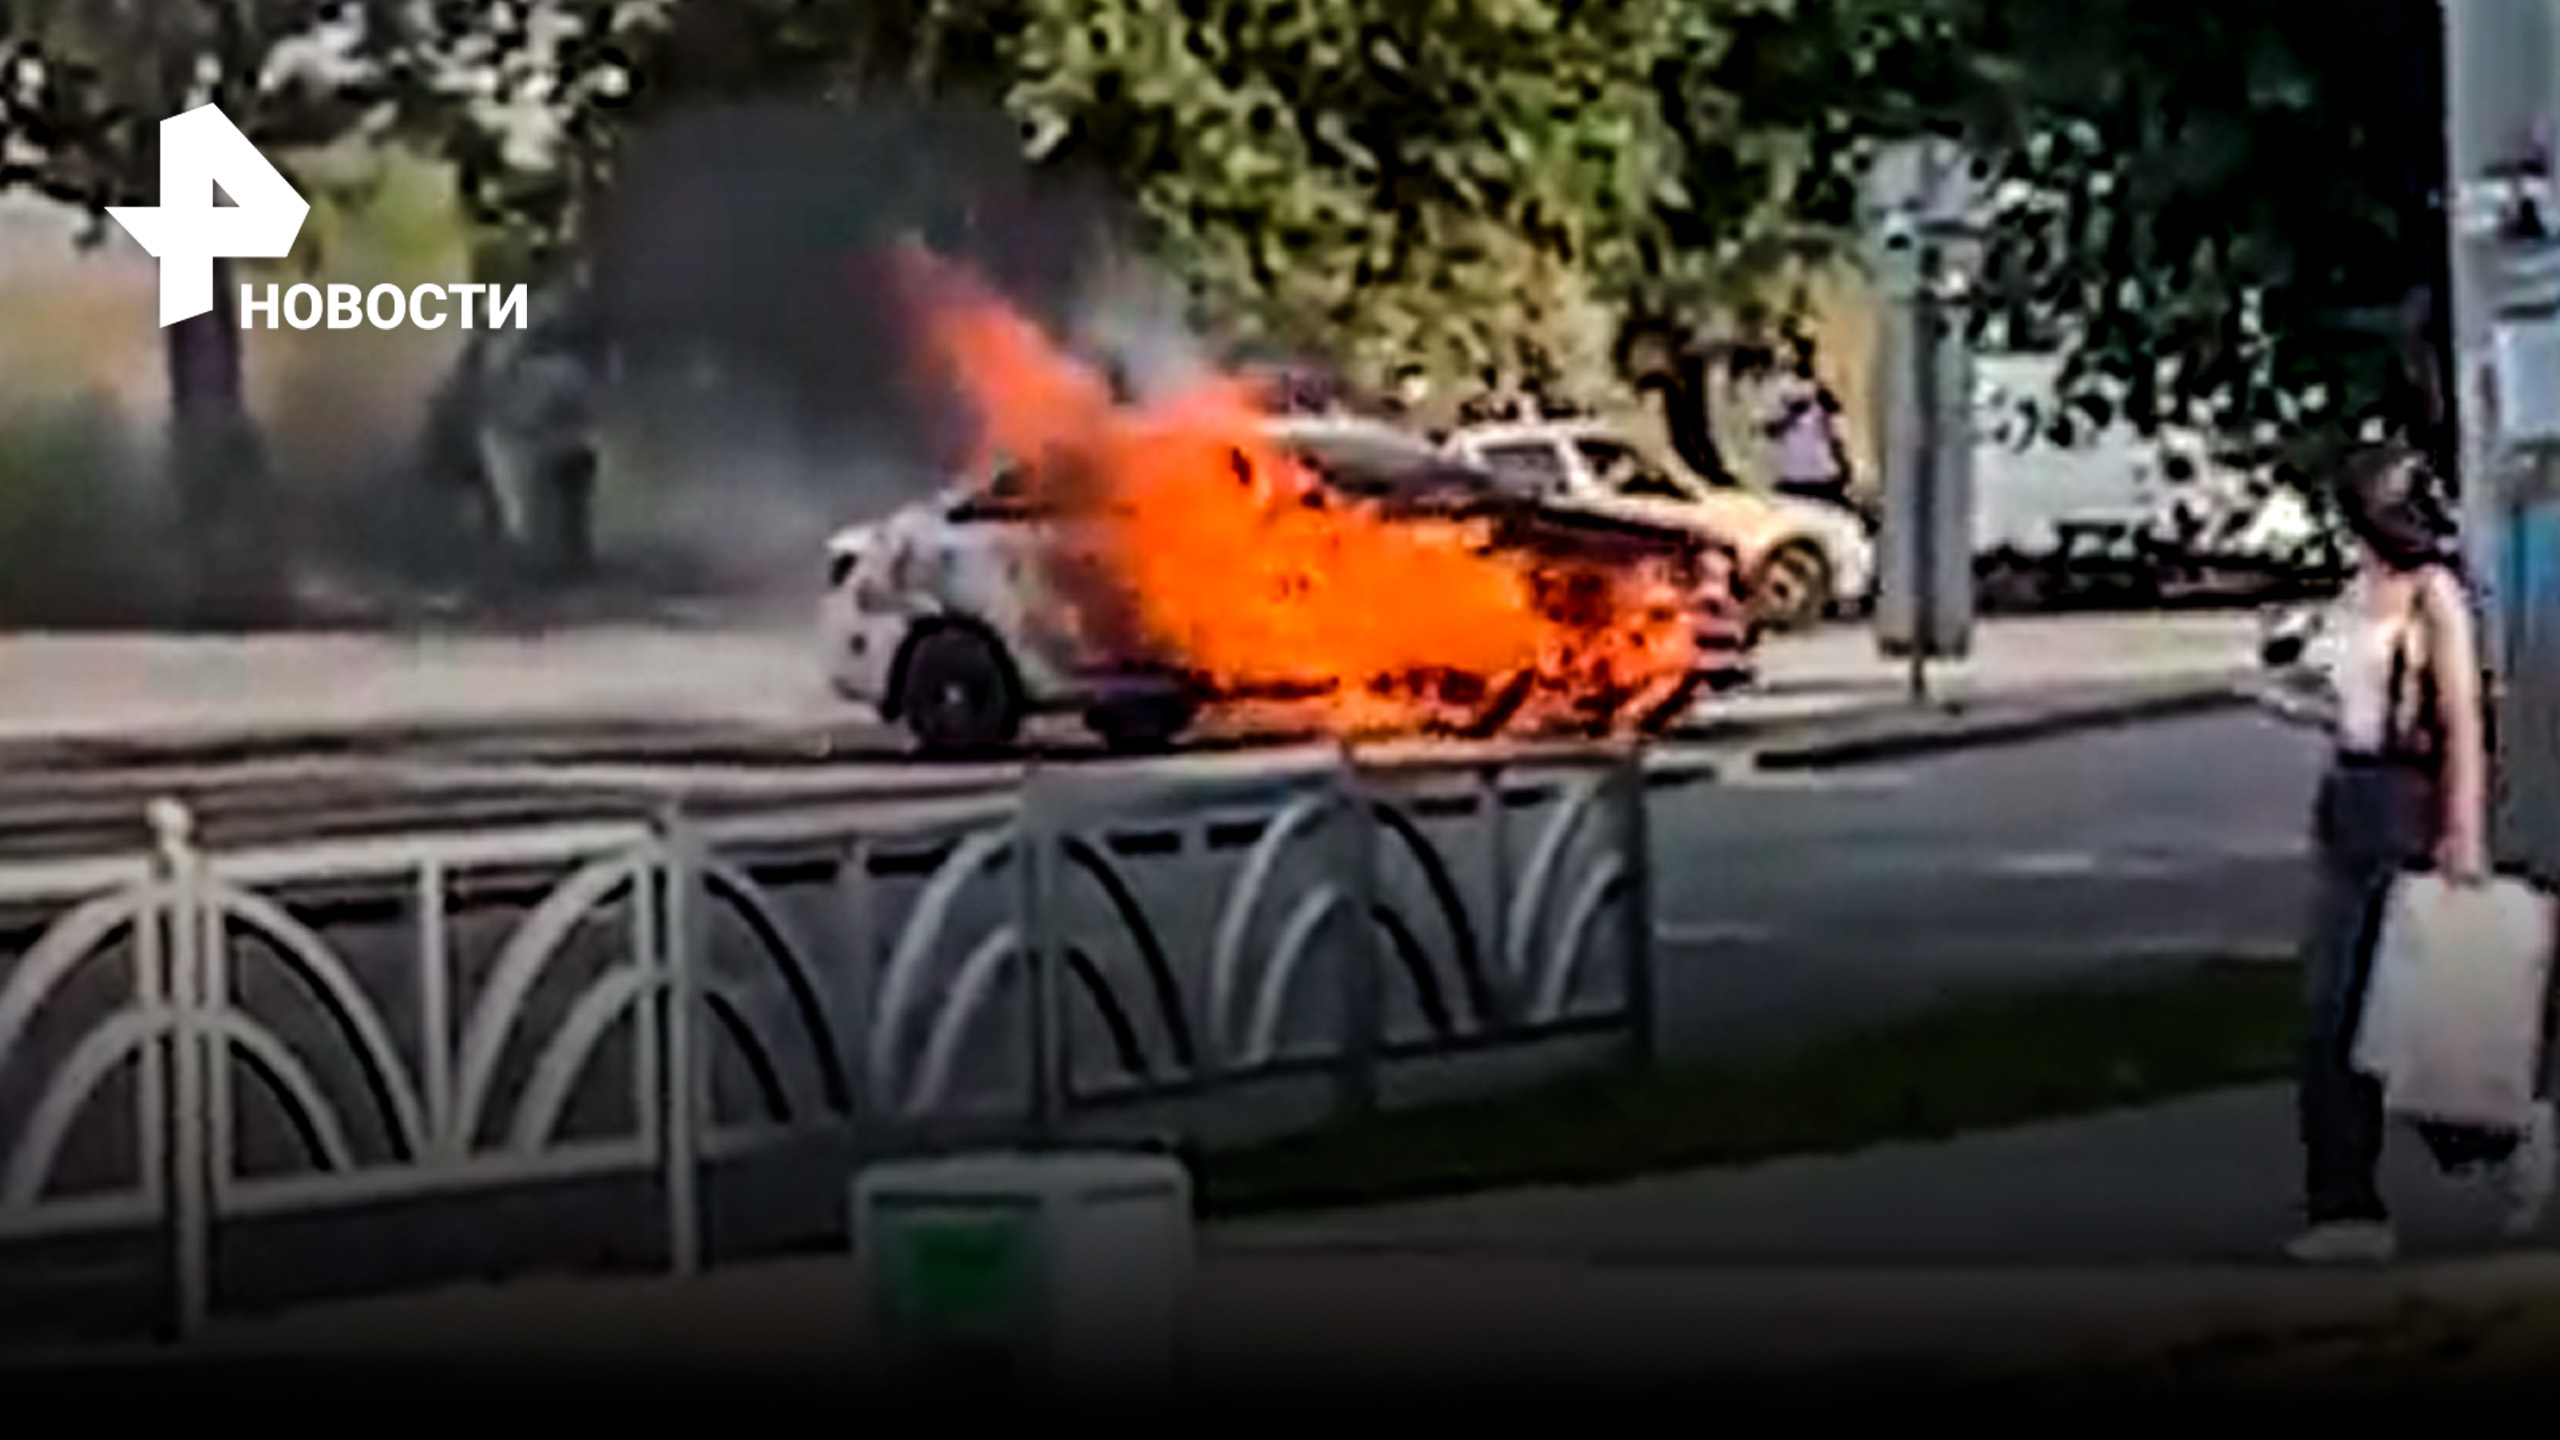 Такси вспыхнуло на трассе: загорелось прямо на ходу в Екатеренбурге / РЕН Новости